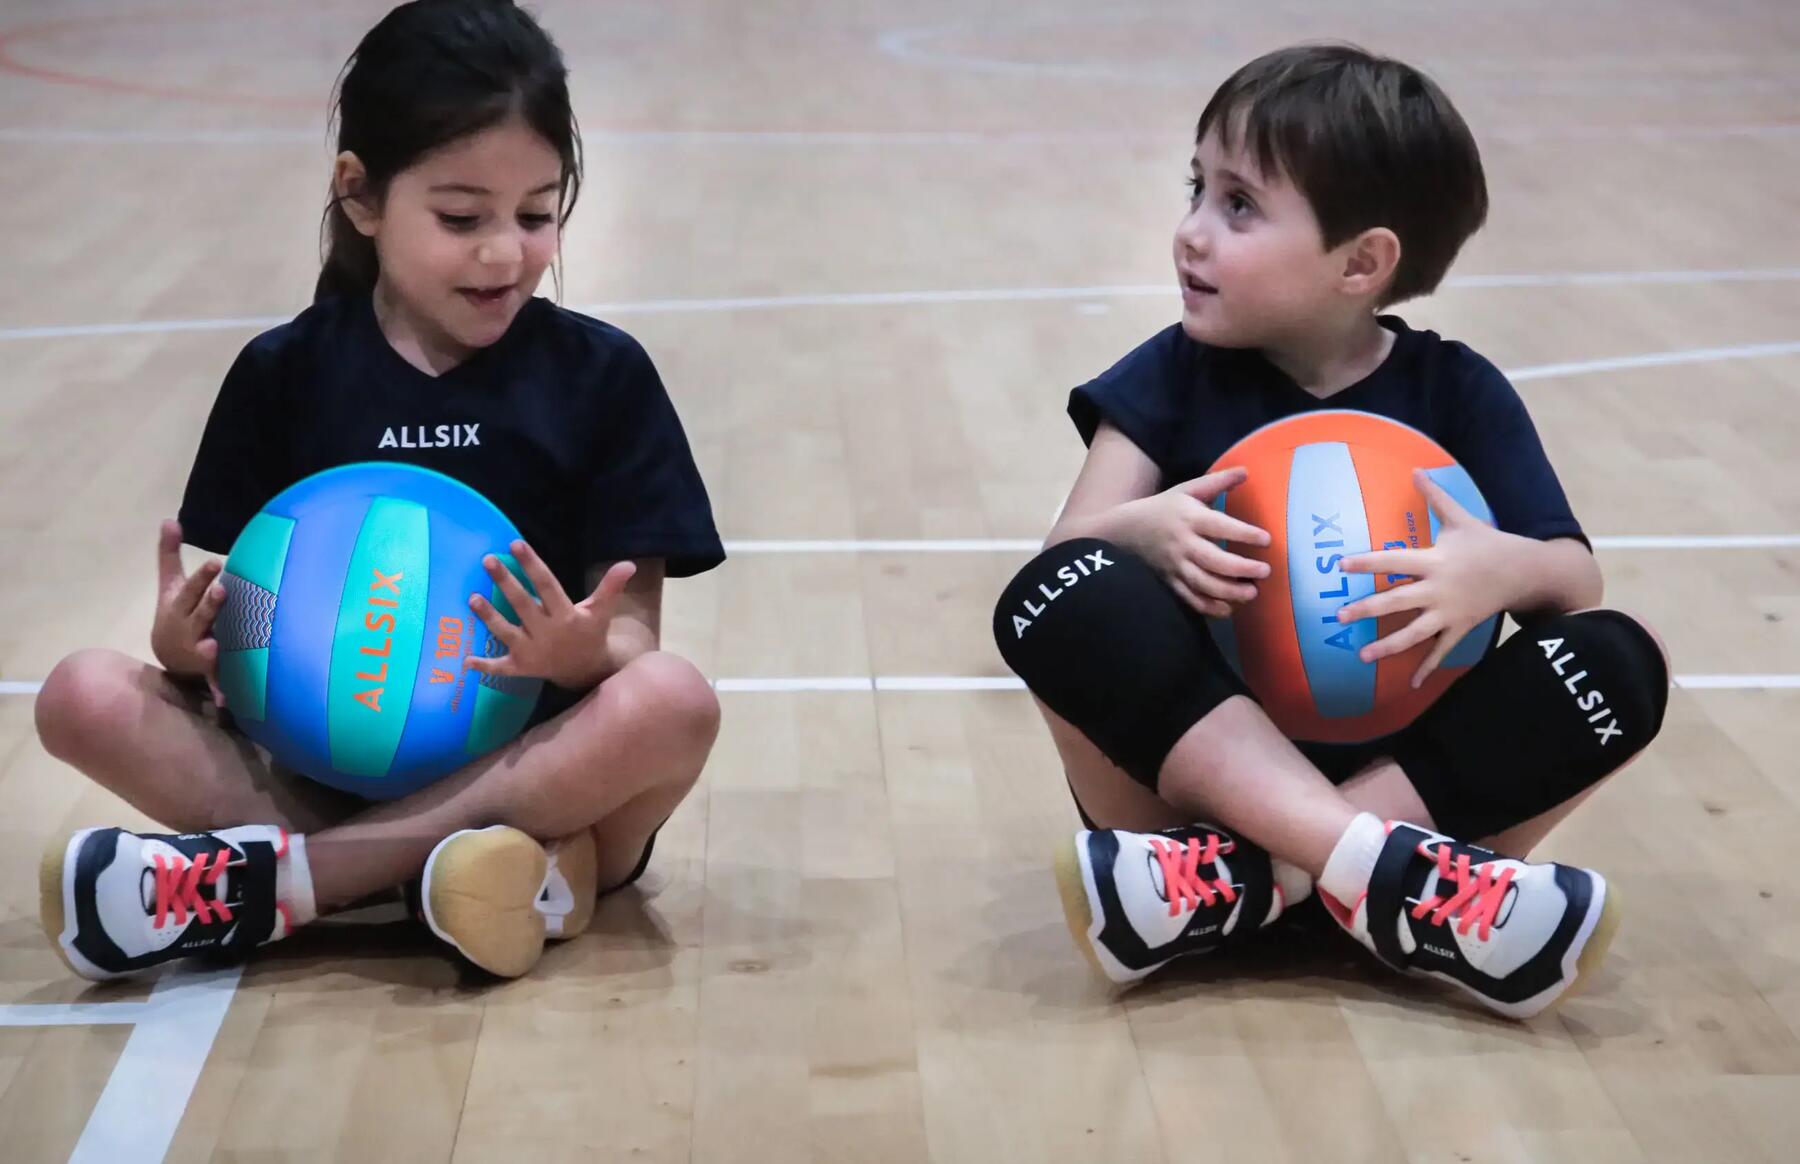 Zwei Kinder tragen Volleyballschuhe und sitzen in der Sporthalle auf dem Boden